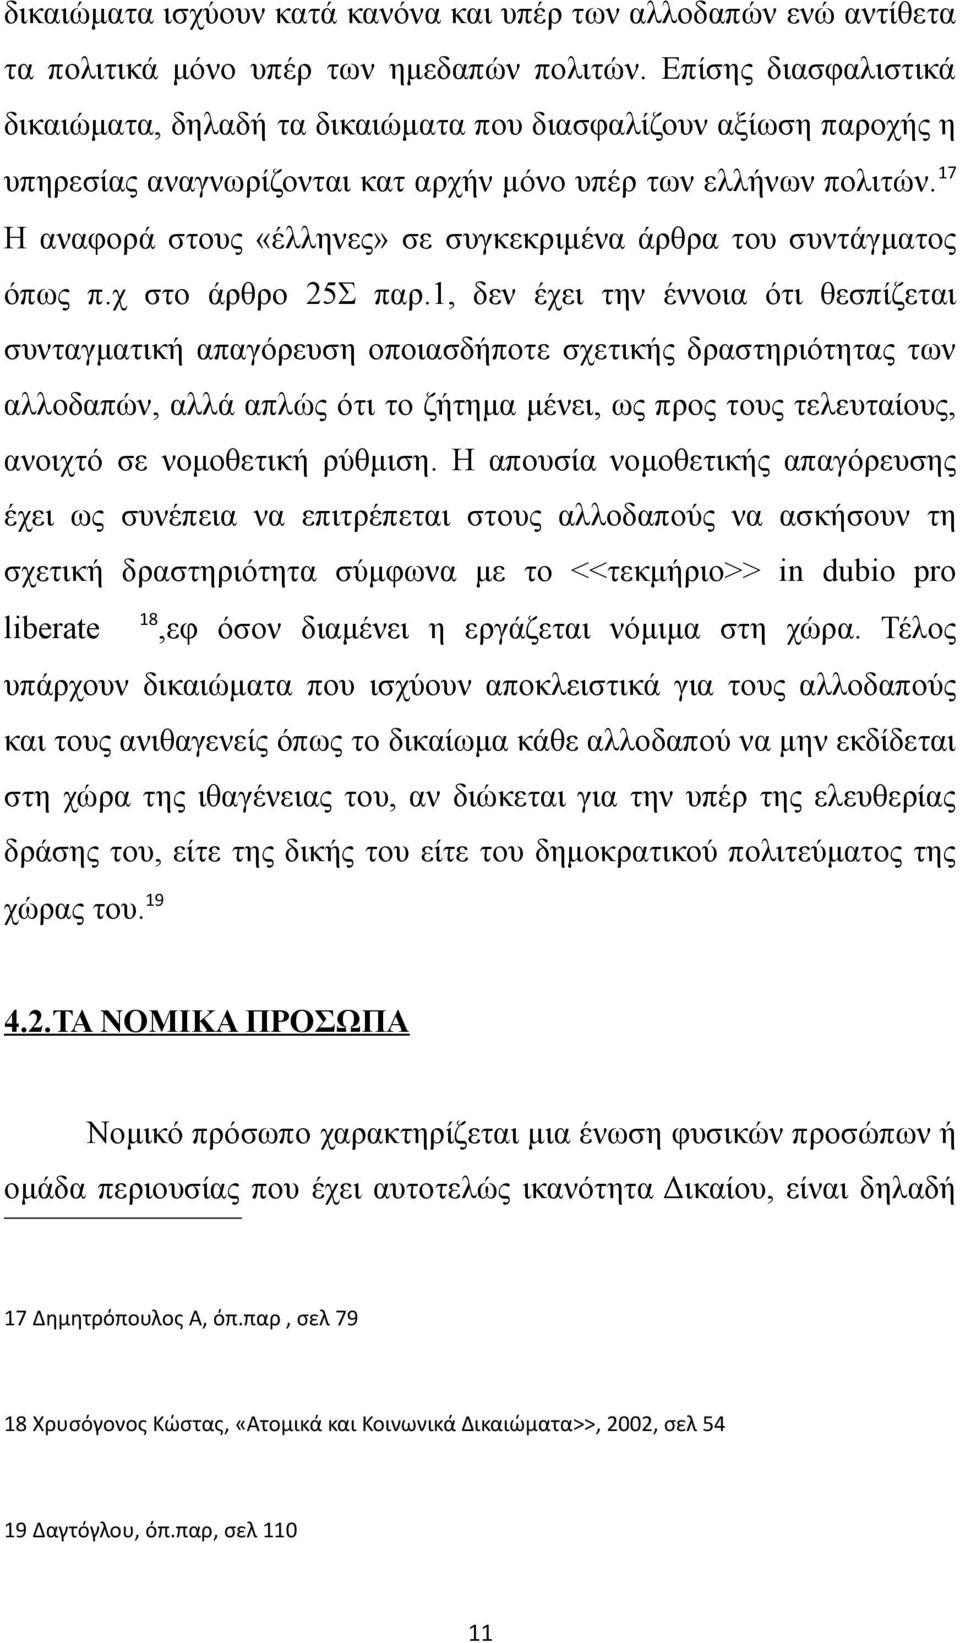 17 Η αναφορά στους «έλληνες» σε συγκεκριμένα άρθρα του συντάγματος όπως π.χ στο άρθρο 25Σ παρ.